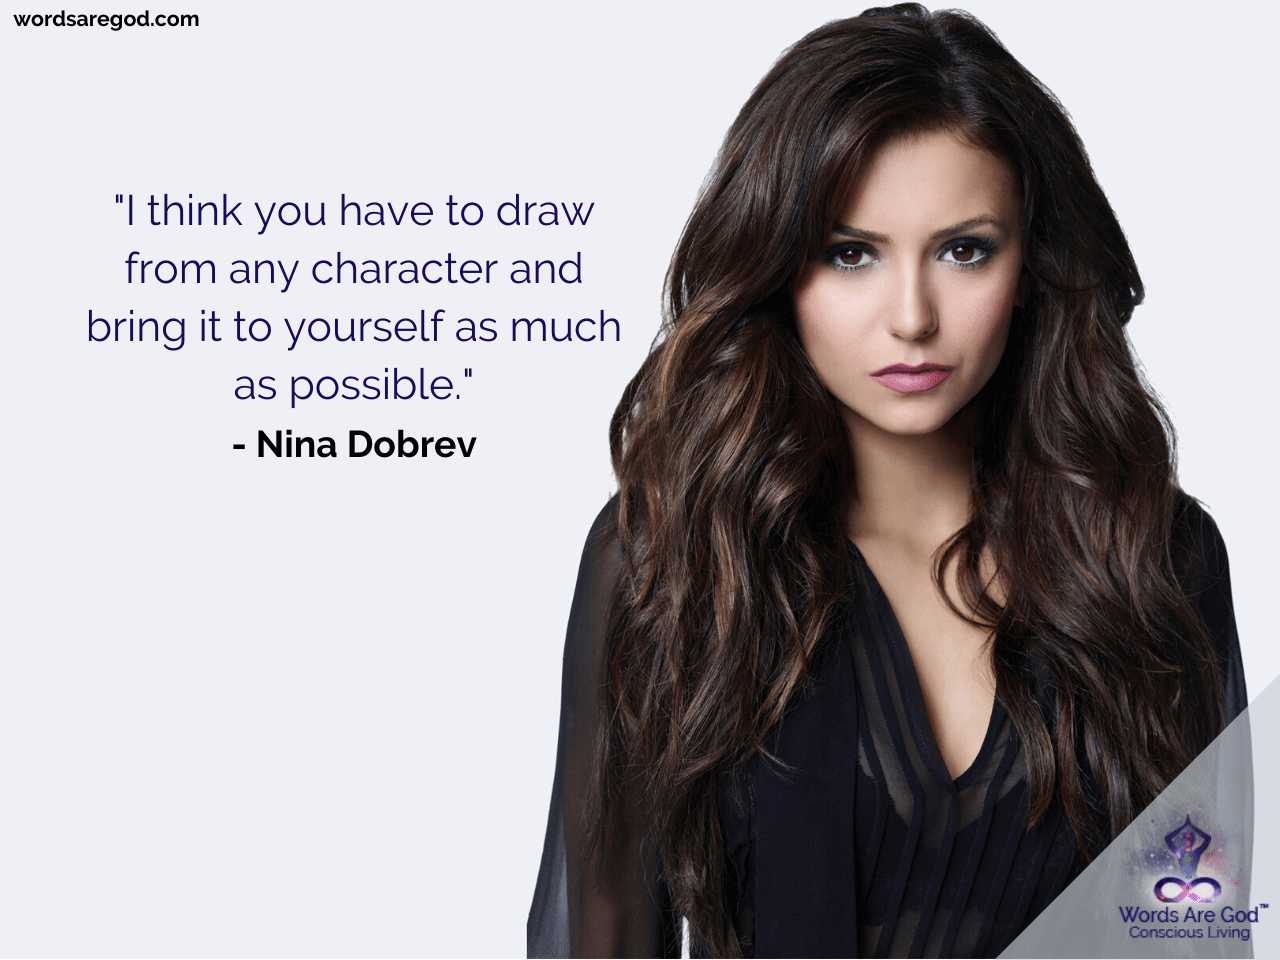 Nina Dobrev Life Quotes